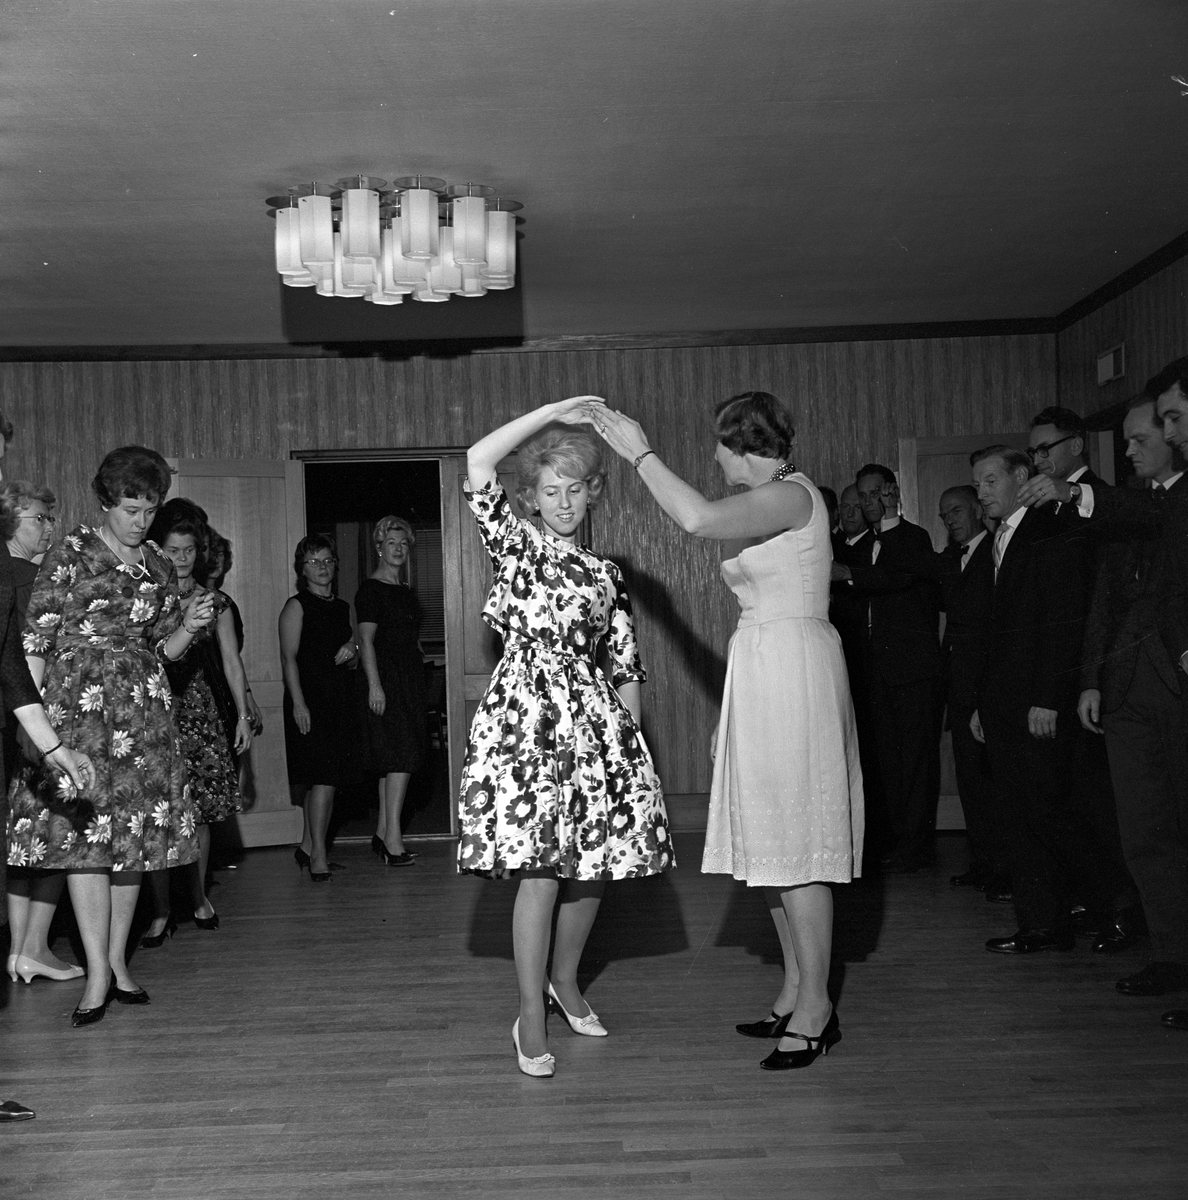 Serie. Danseundervisning for lektorer i Osloskolen, Lektorenes Hus.
Fotografert 1963

